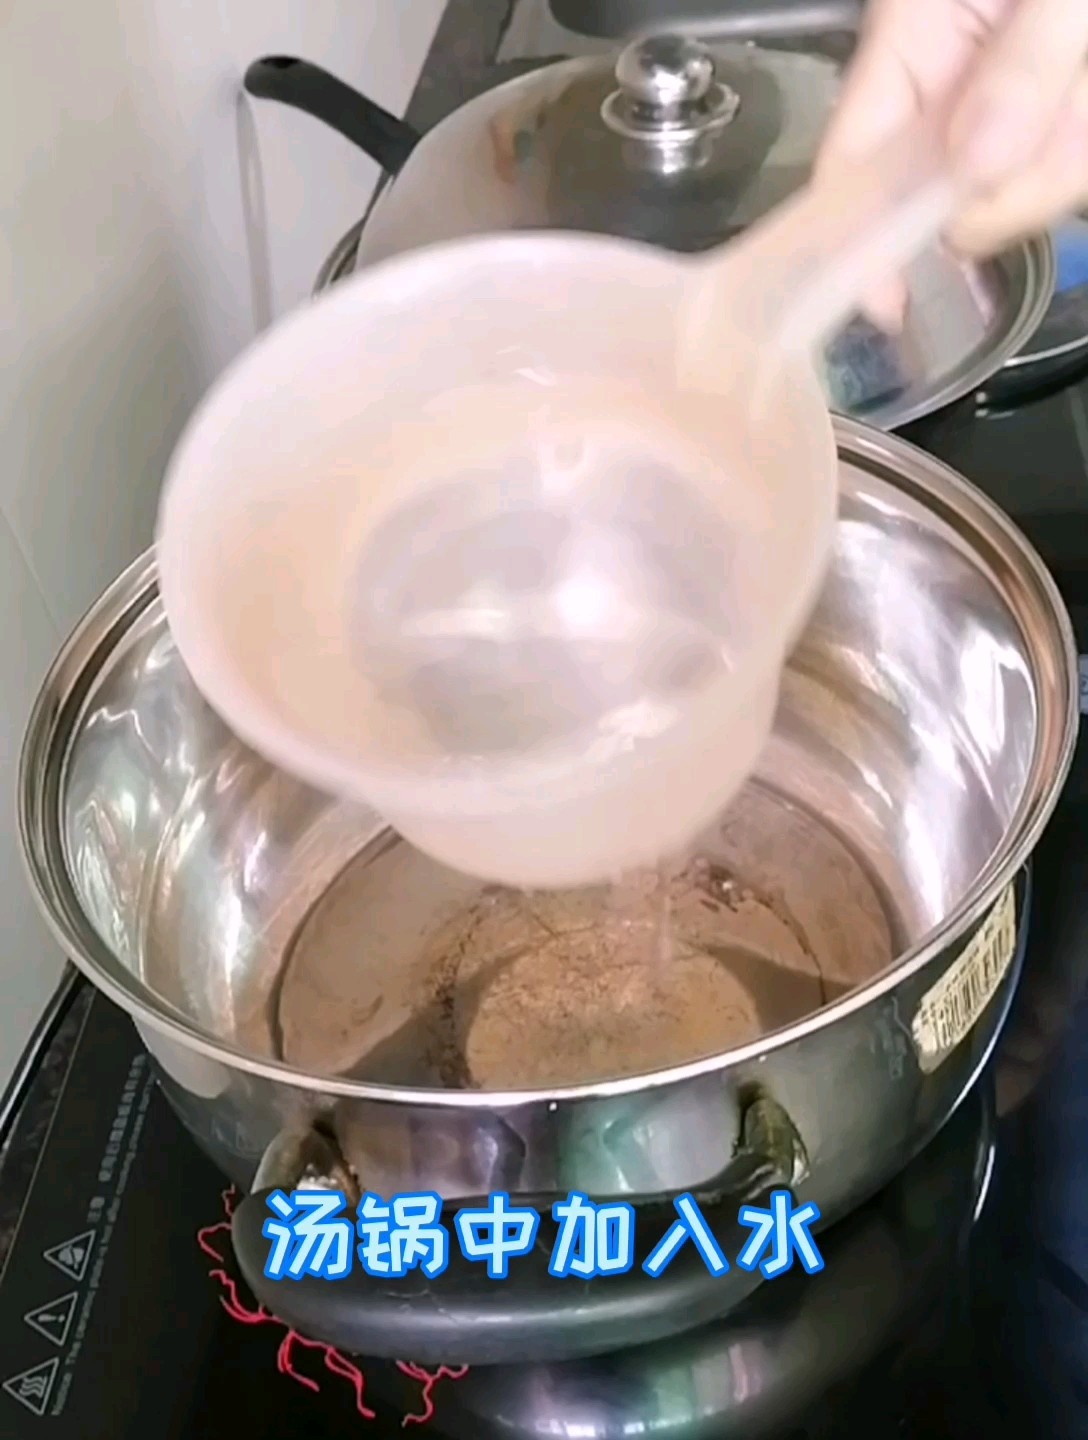 Xiabuxiabu Cold Seaweed recipe